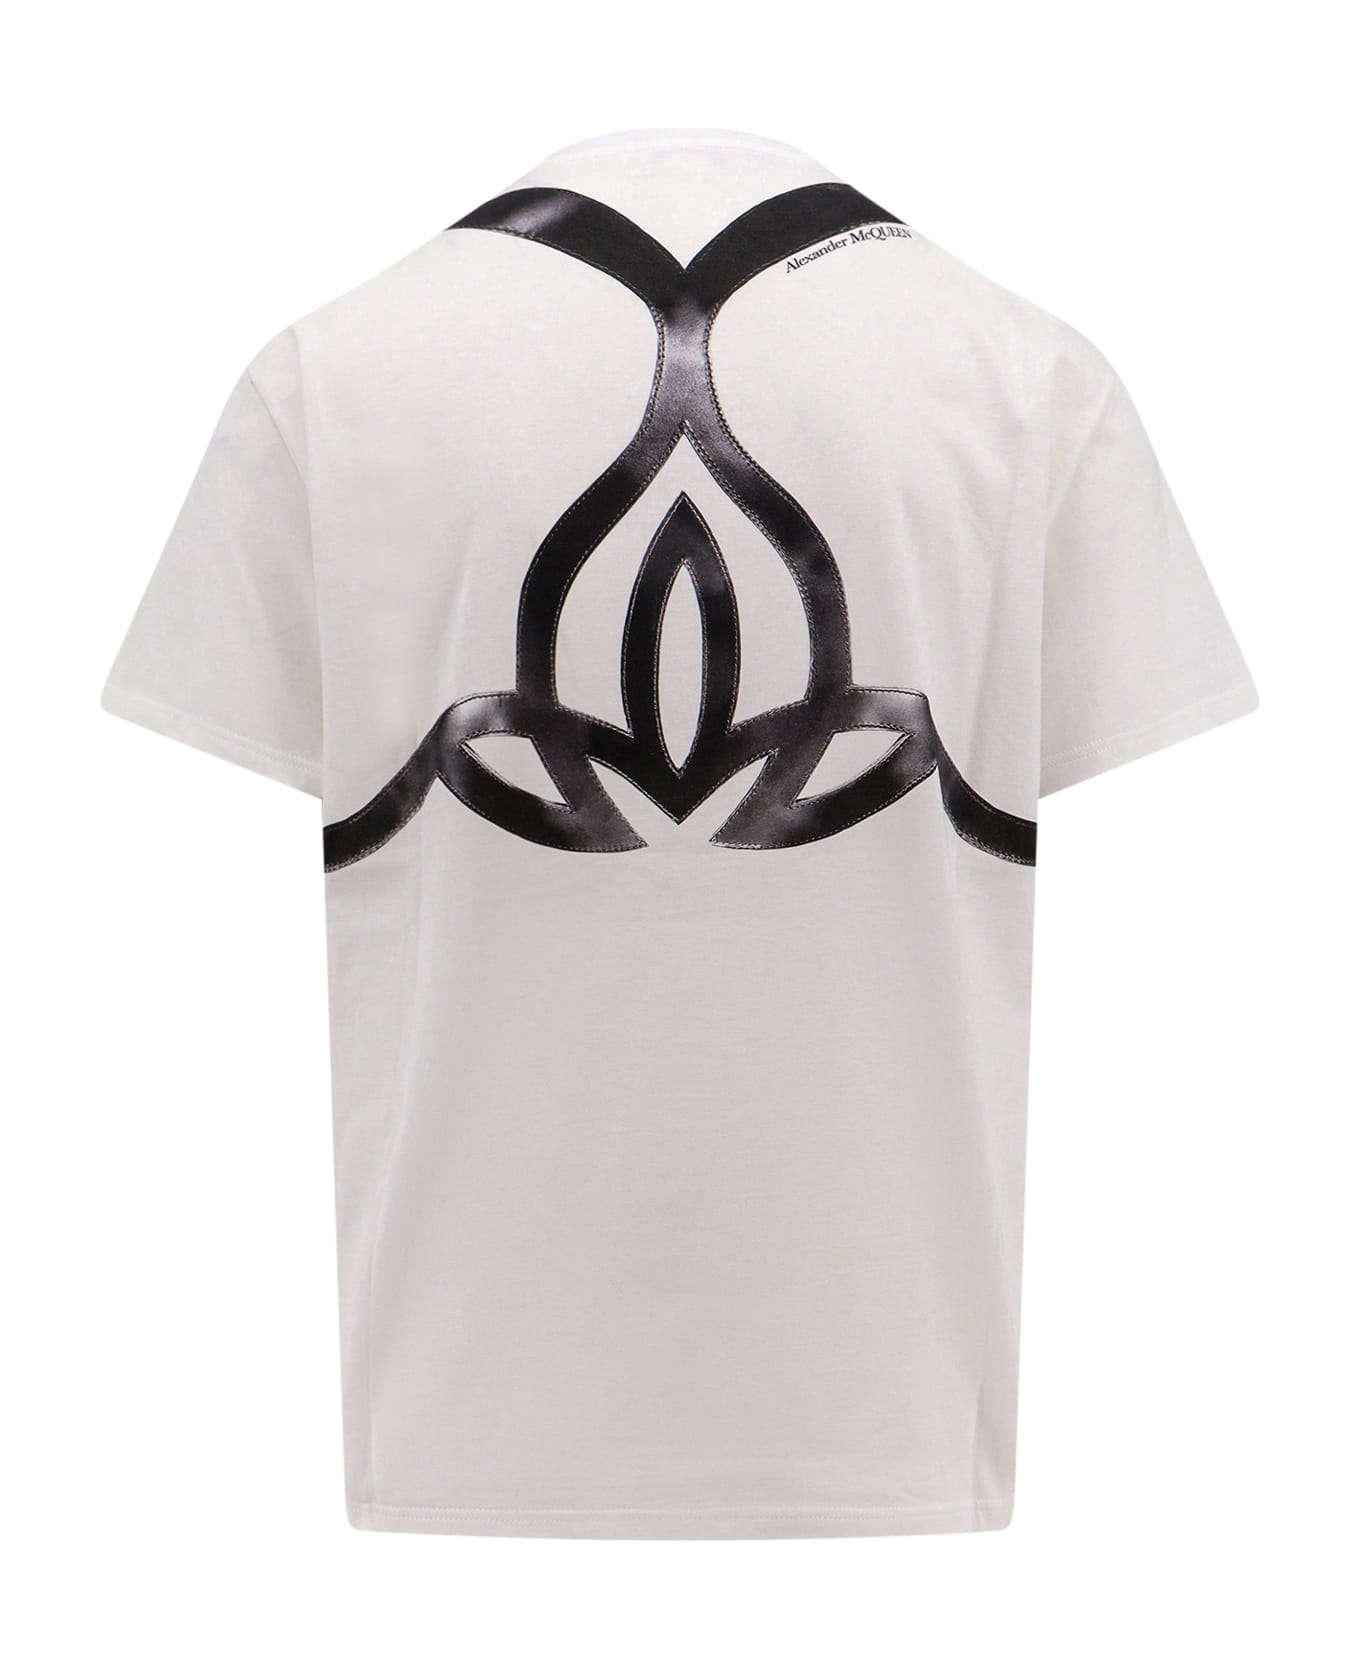 Alexander McQueen Graphic Design Crewneck T-shirt - White